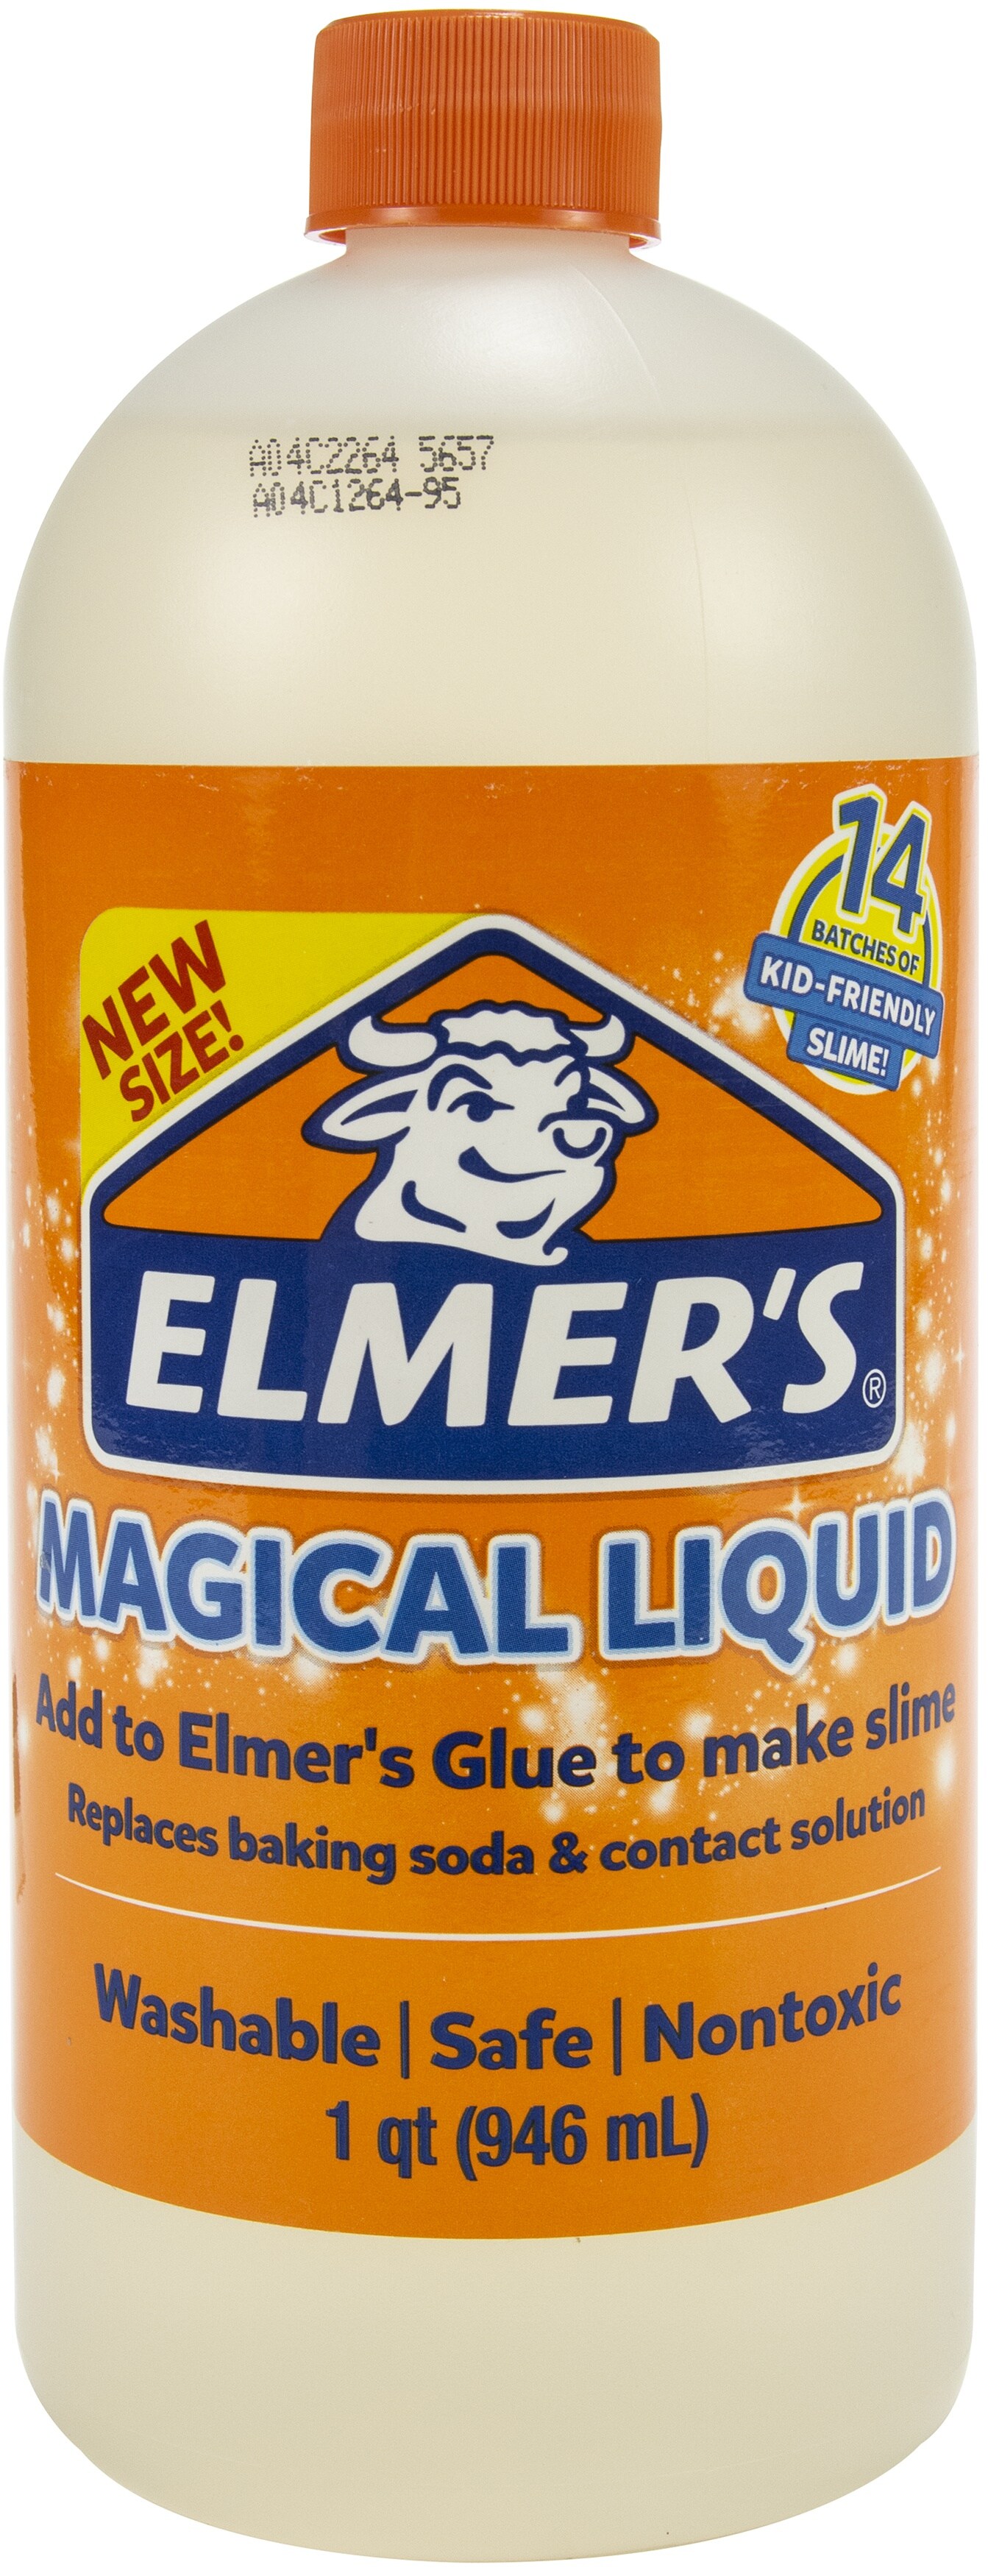 ELMER'S MAGICAL LIQUID * ELMER'S SLIME ACTIVATOR 